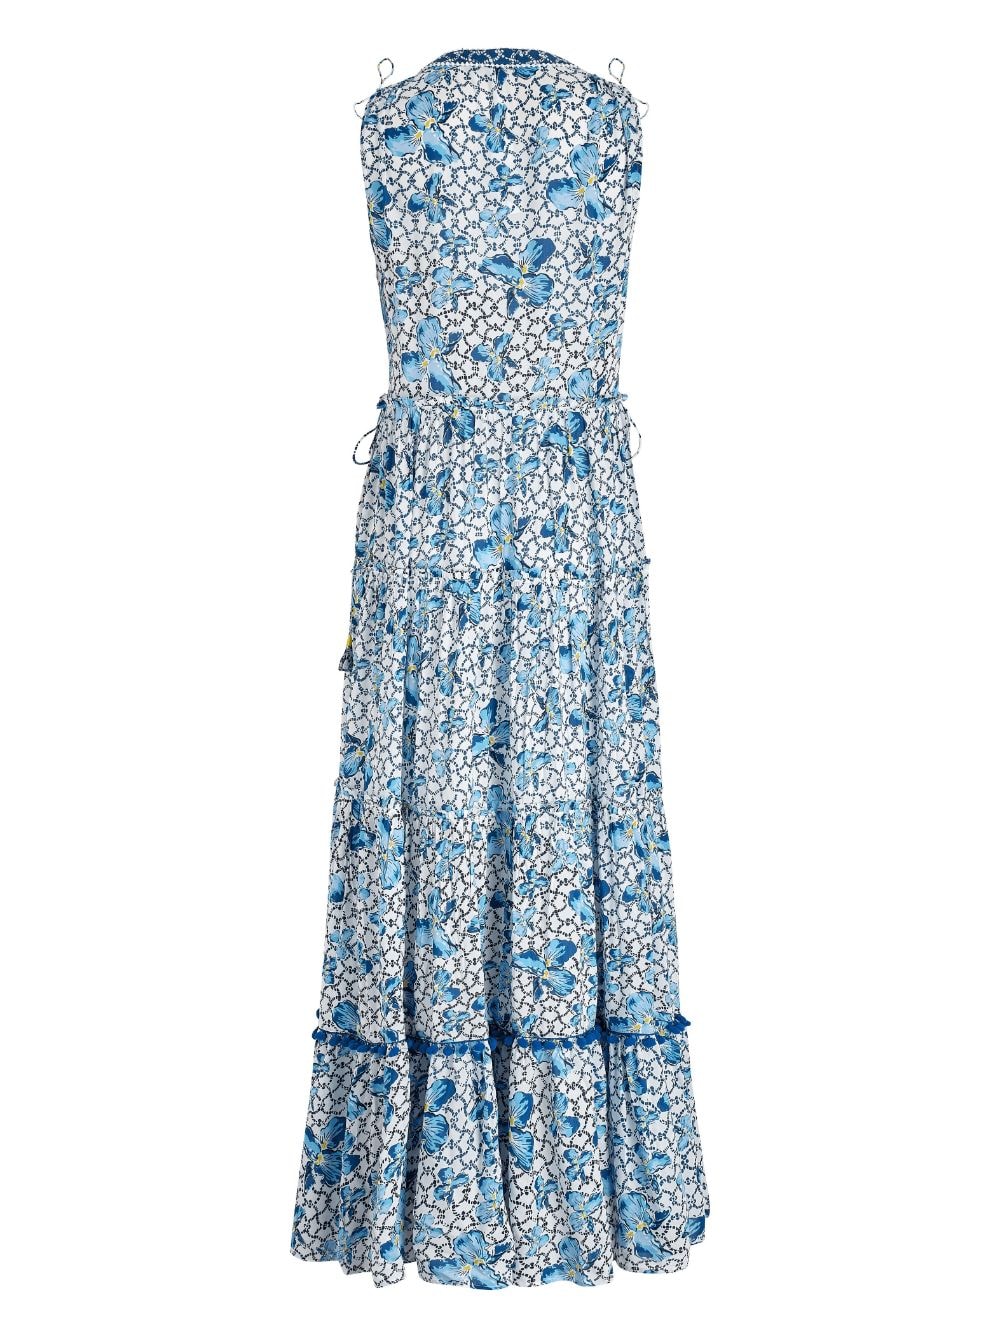 Vilebrequin x Poupette St Barth Ivy gelaagde jurk Blauw